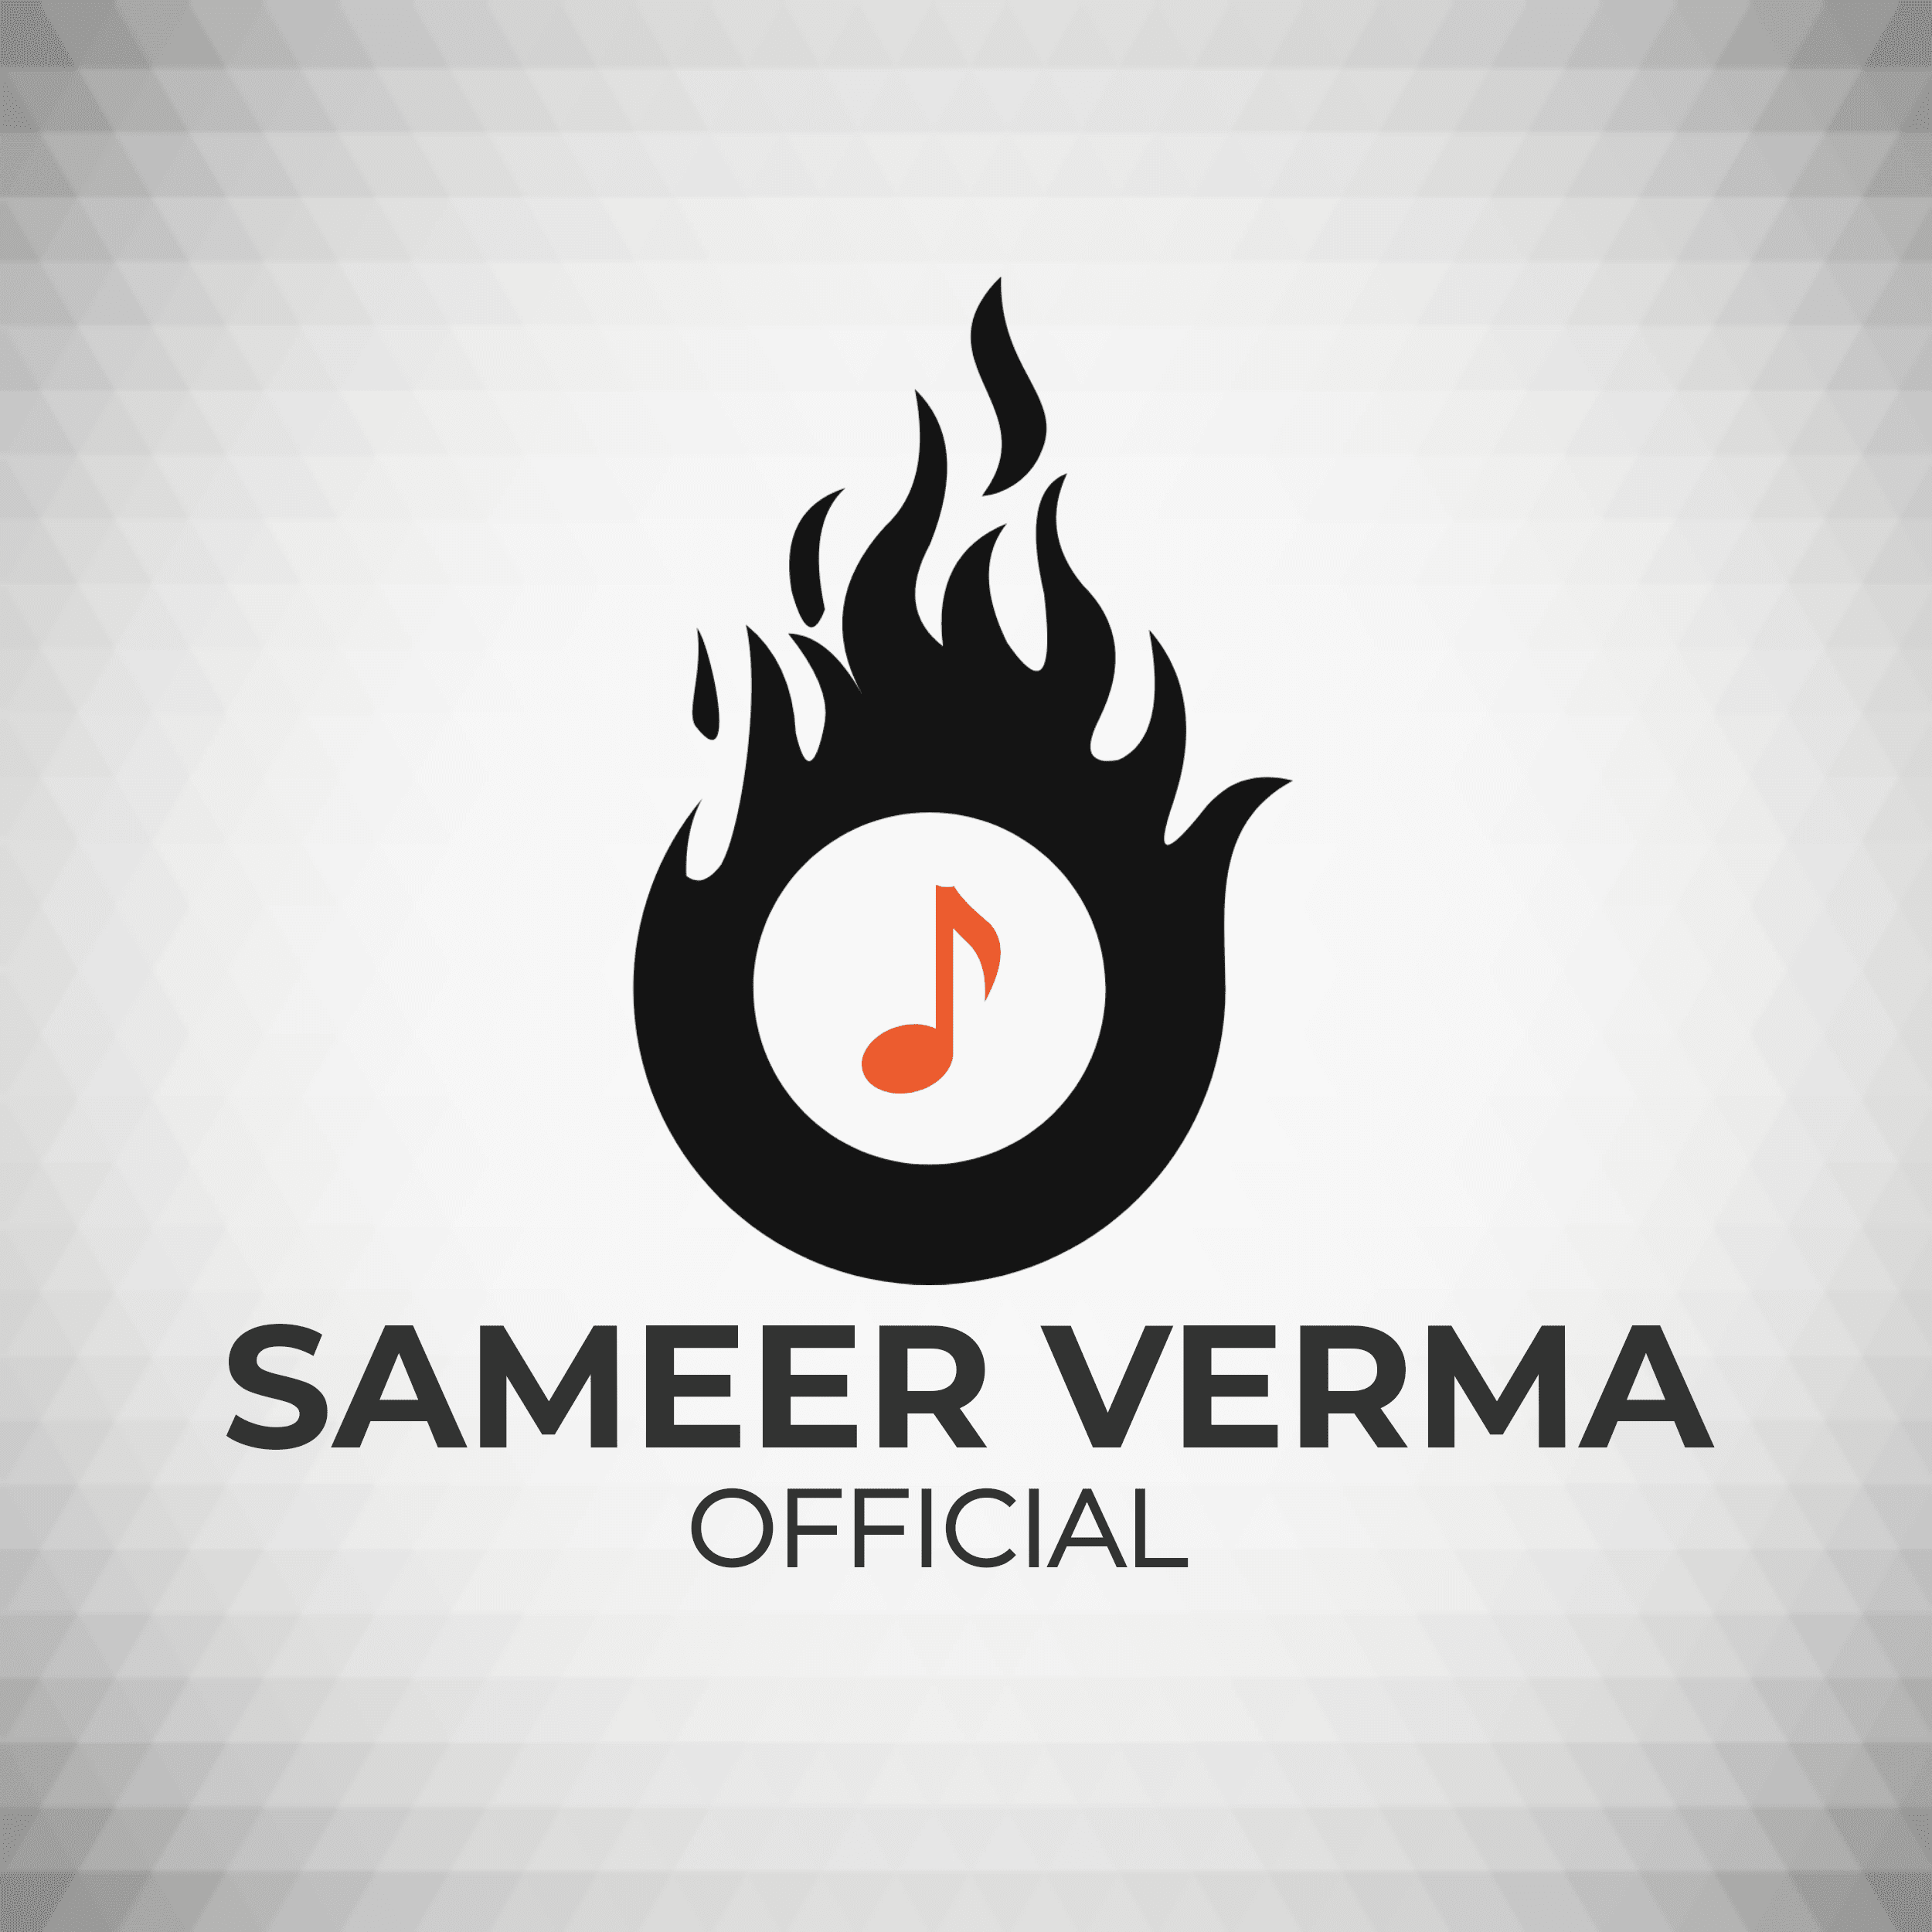 Sameer Verma Official